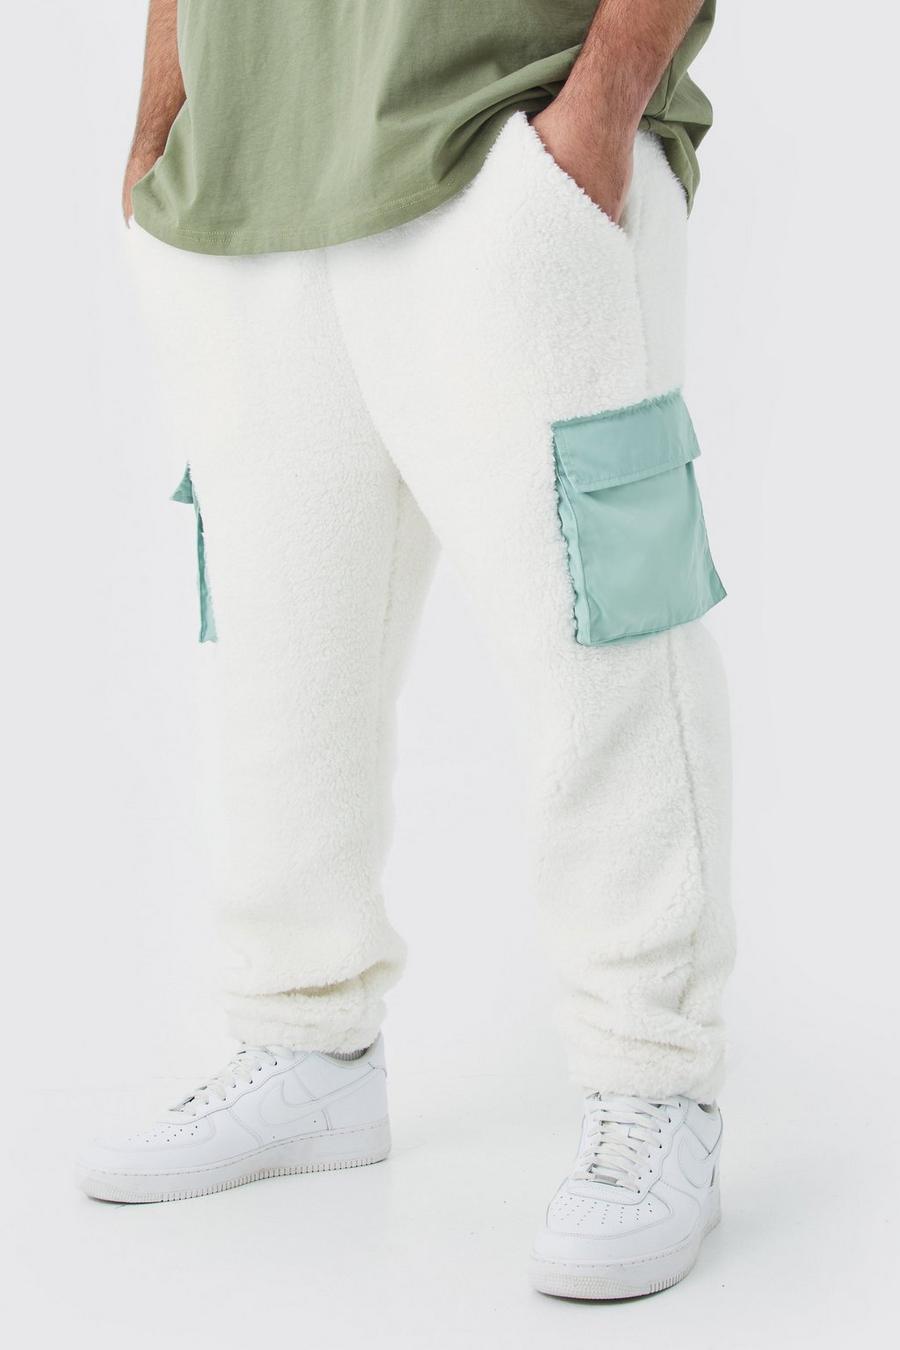 Pantaloni tuta Plus Size in pile borg con tasche Cargo in nylon, Sage